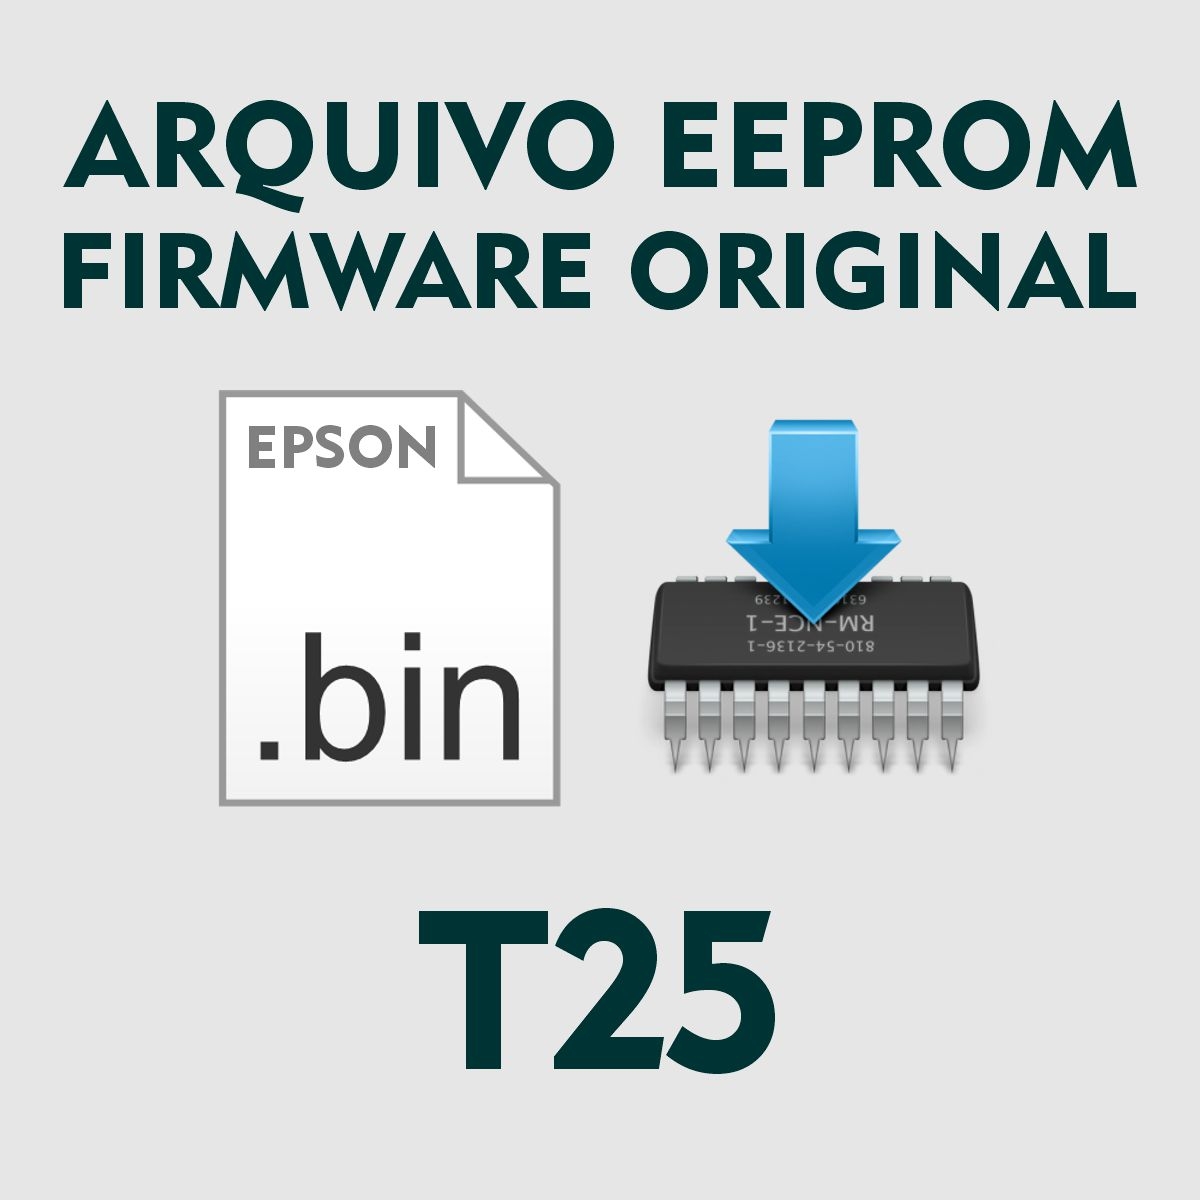 Epson T25 | Arquivo de Eeprom Firmware .bin - Original